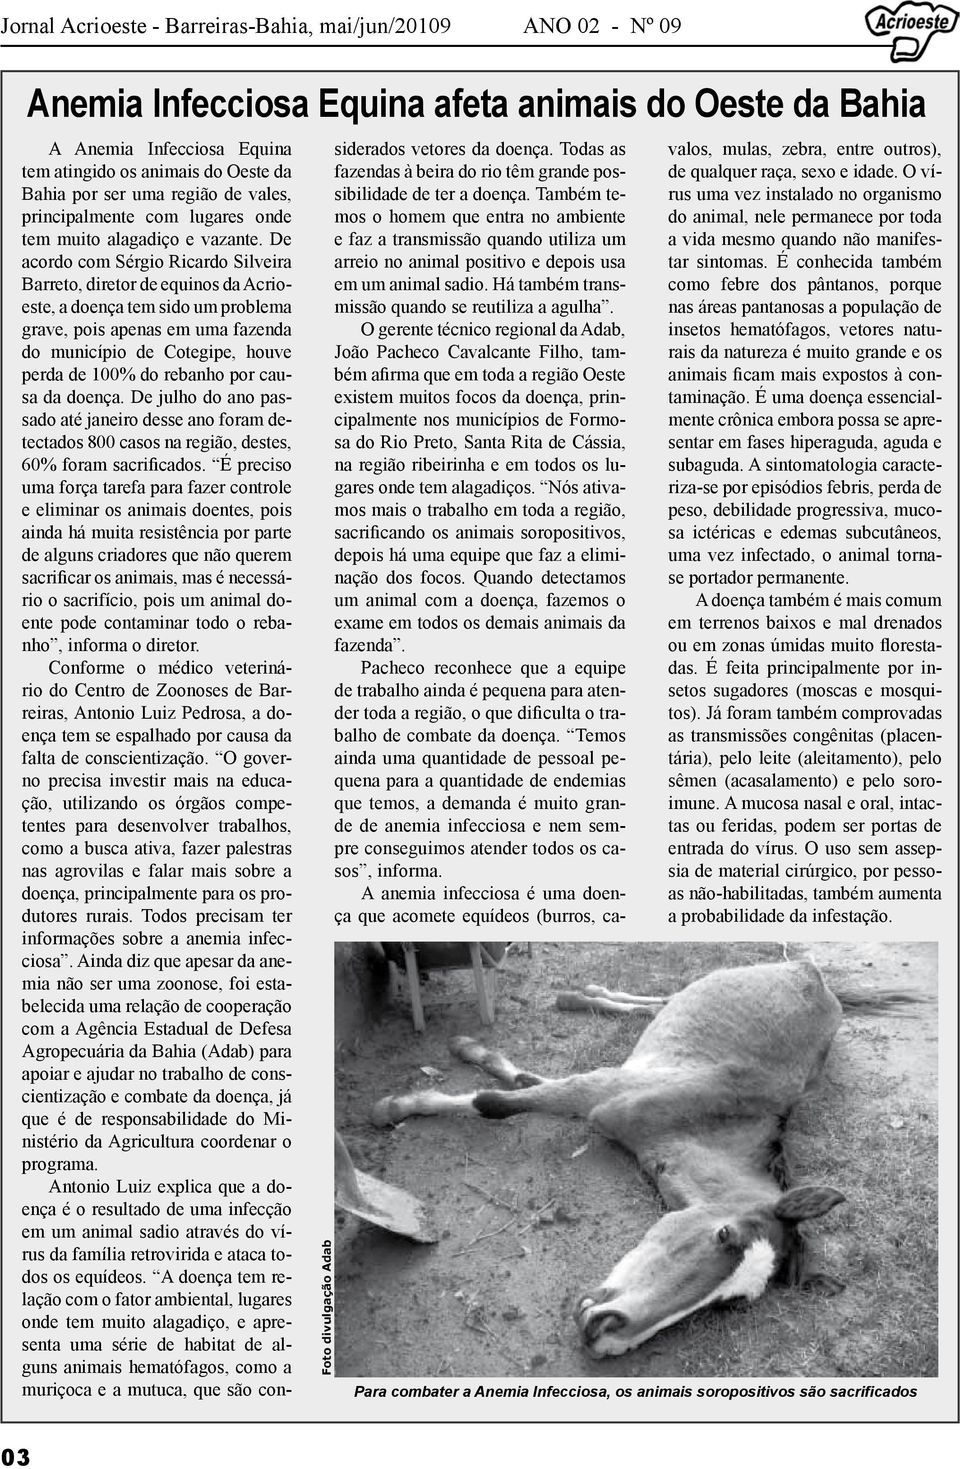 De acordo com Sérgio Ricardo Silveira Barreto, diretor de equinos da Acrioeste, a doença tem sido um problema grave, pois apenas em uma fazenda do município de Cotegipe, houve perda de 100% do